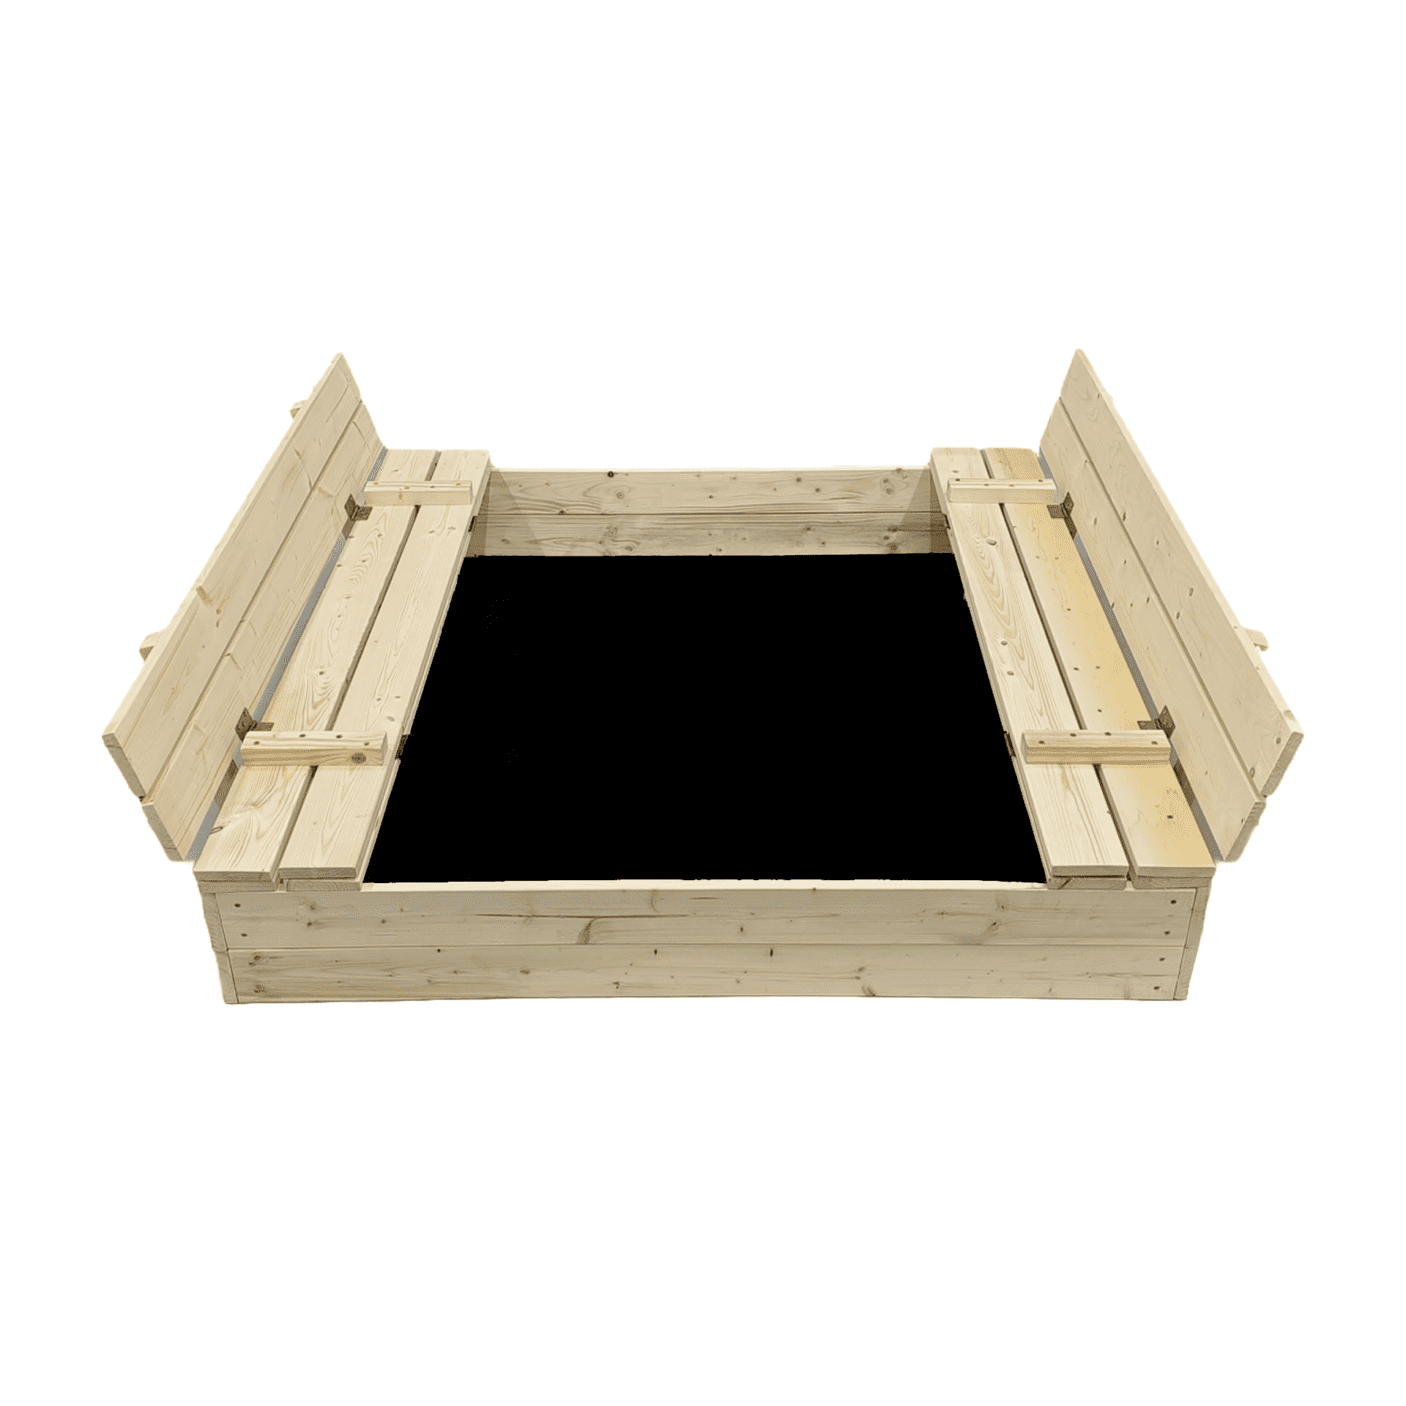 Smėlio dėžė Bonus Orbis, 120x120cm, su patiesalu ir 250kg smėlio